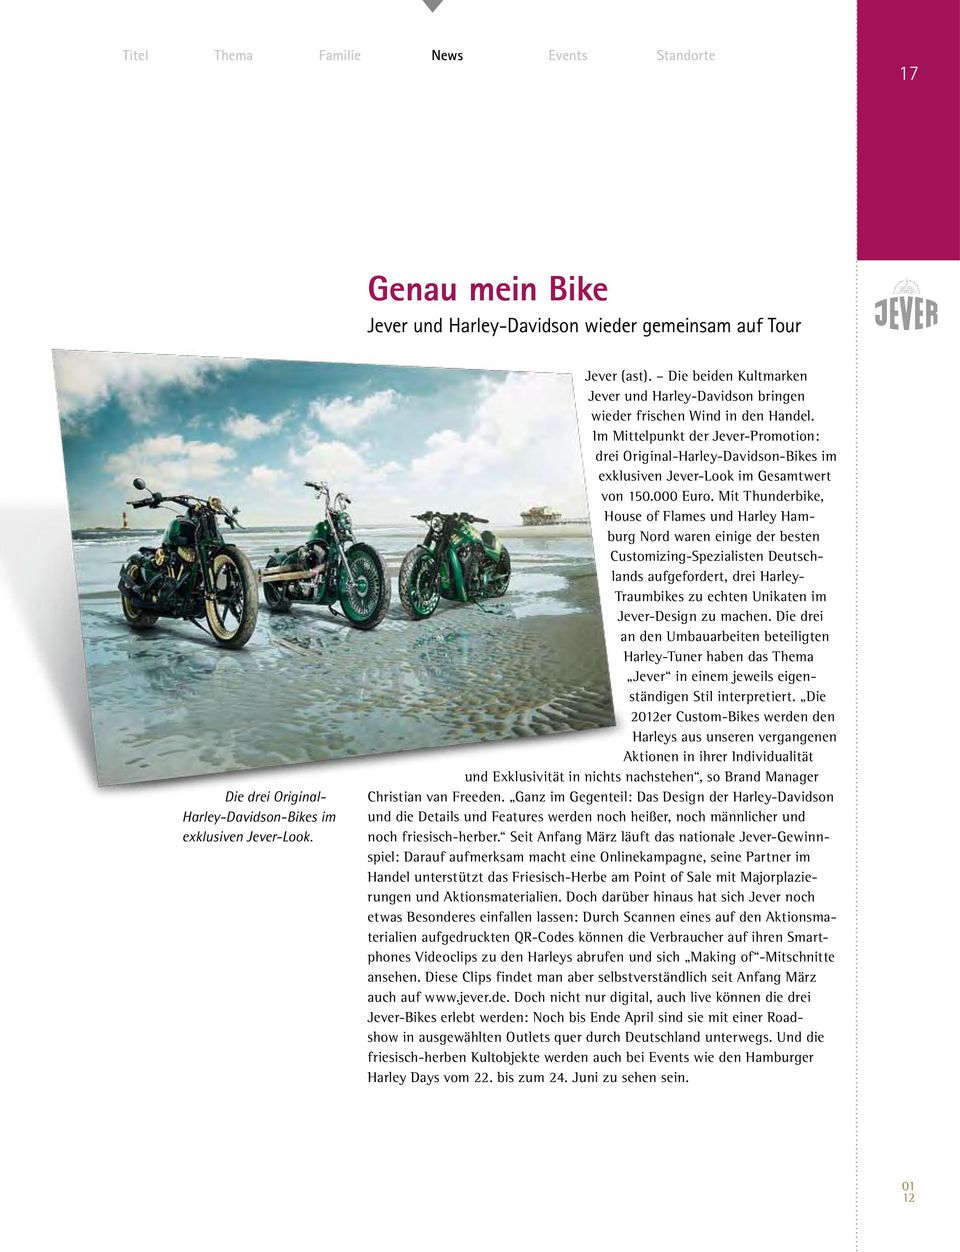 Im Mittelpunkt der Jever-Promotion: drei Original-Harley-Davidson-Bikes im exklusiven Jever-Look im Gesamtwert von 150.000 Euro.